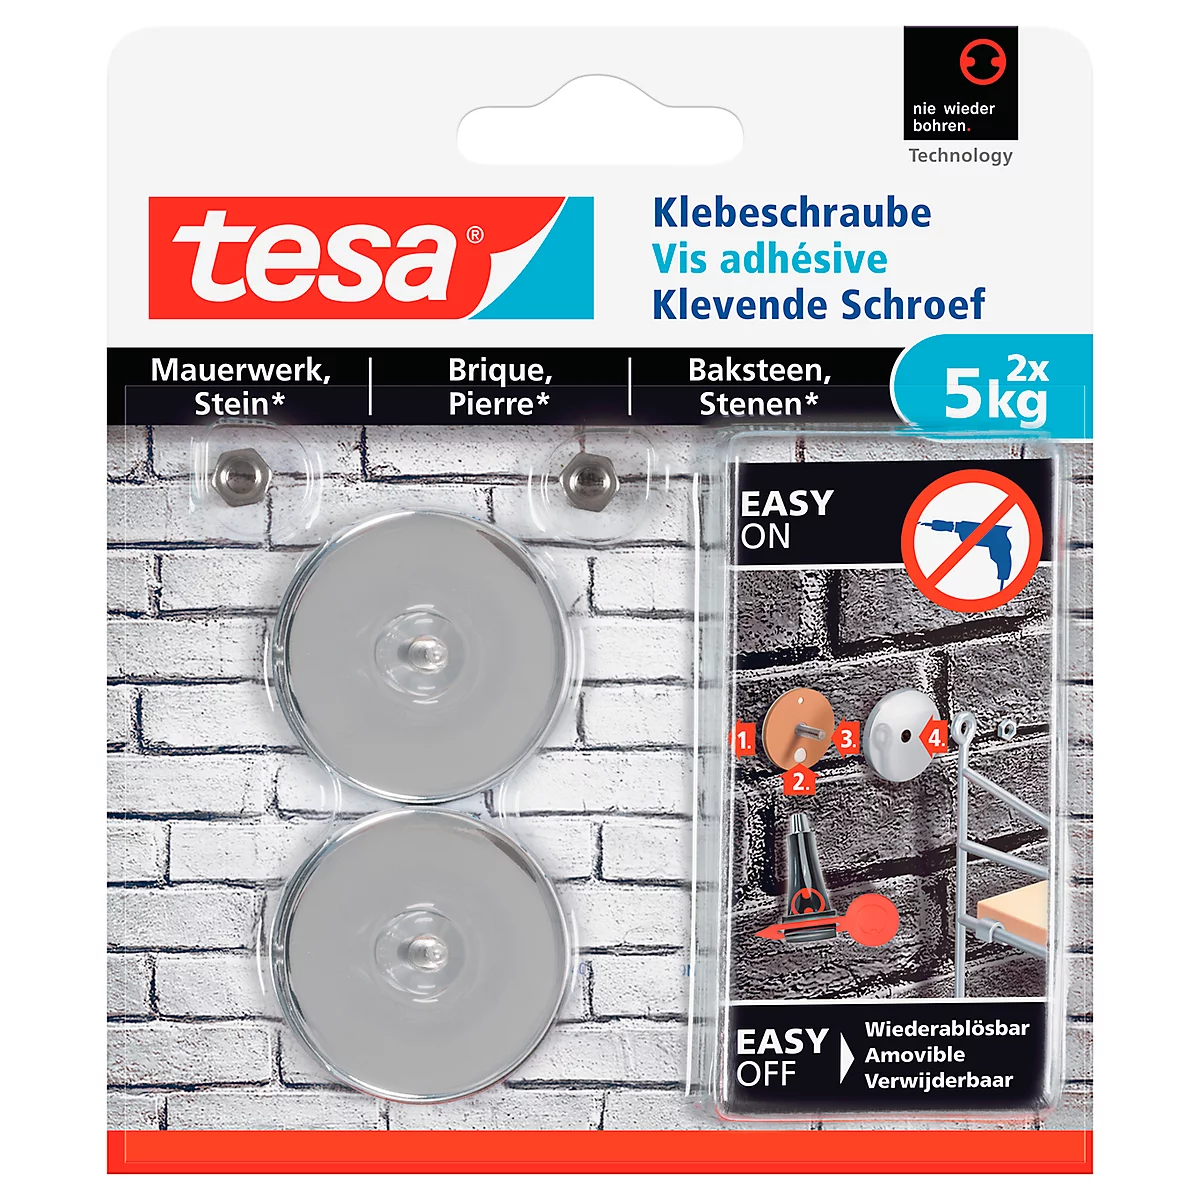 Klebeschraube tesa®, für Mauerwerk & Stein im Innen- & Aussenbereich, Haftkraft bis 5 kg, ablösbar, rund, 2 Stück